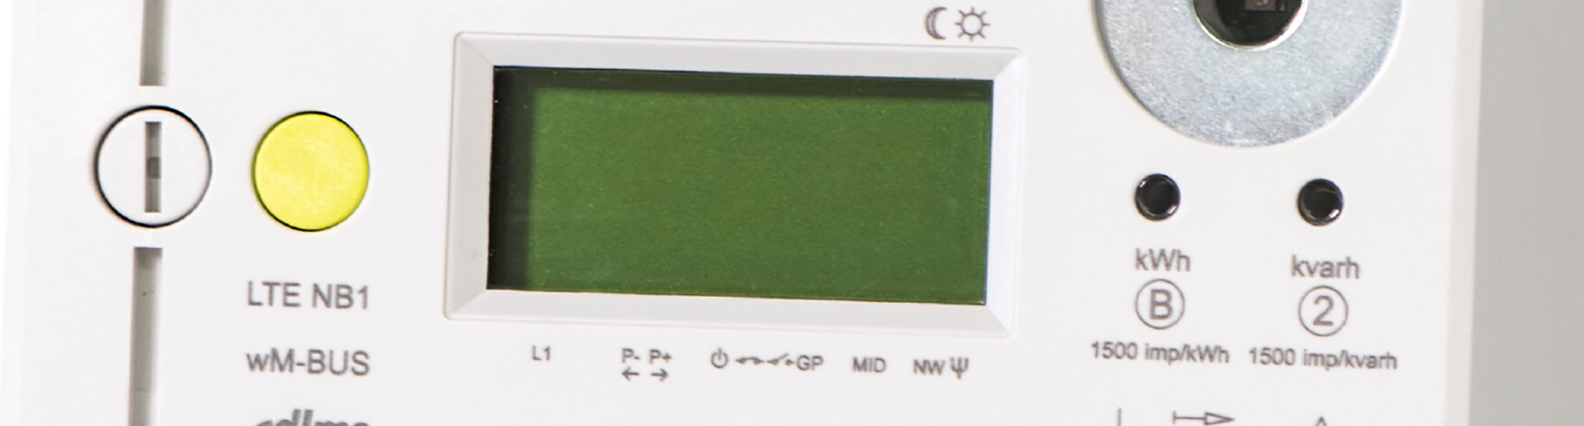 De bedieningsknop van het scherm van de digitale elektriciteitsmeter S211